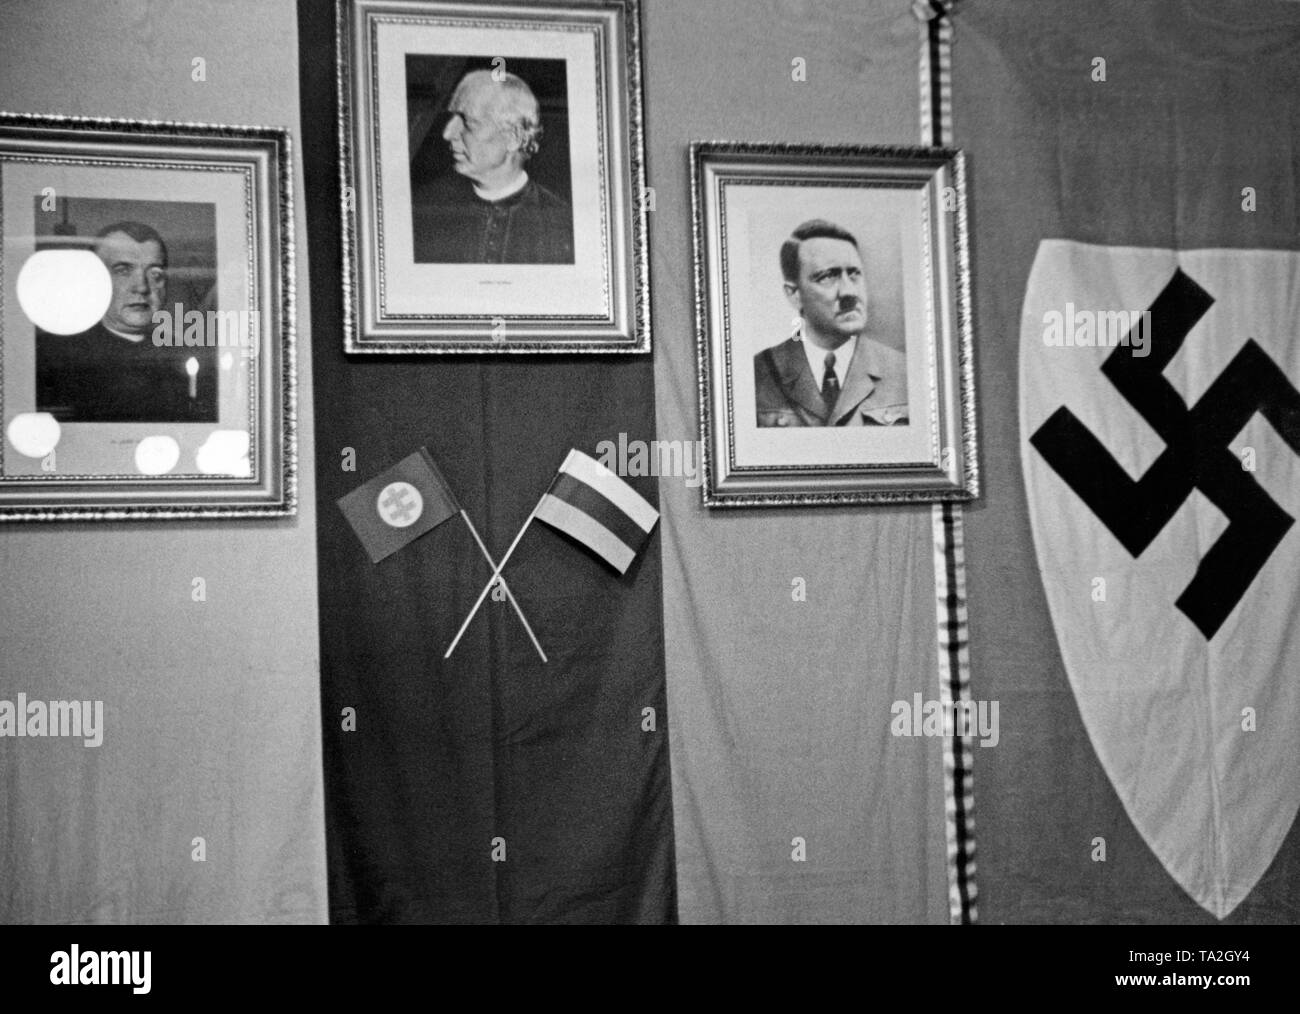 Paese capo della Guardia Hlinka a Bratislava. Ritratti di Jozef Tiso, Andrej Hlinka e Adolf Hitler appendere alla parete. La guardia Hlinka era un paramilitare organizzazione di difesa in Slovacchia dal 1938 al 1945. Foto non datata, intorno al 1939. Foto Stock